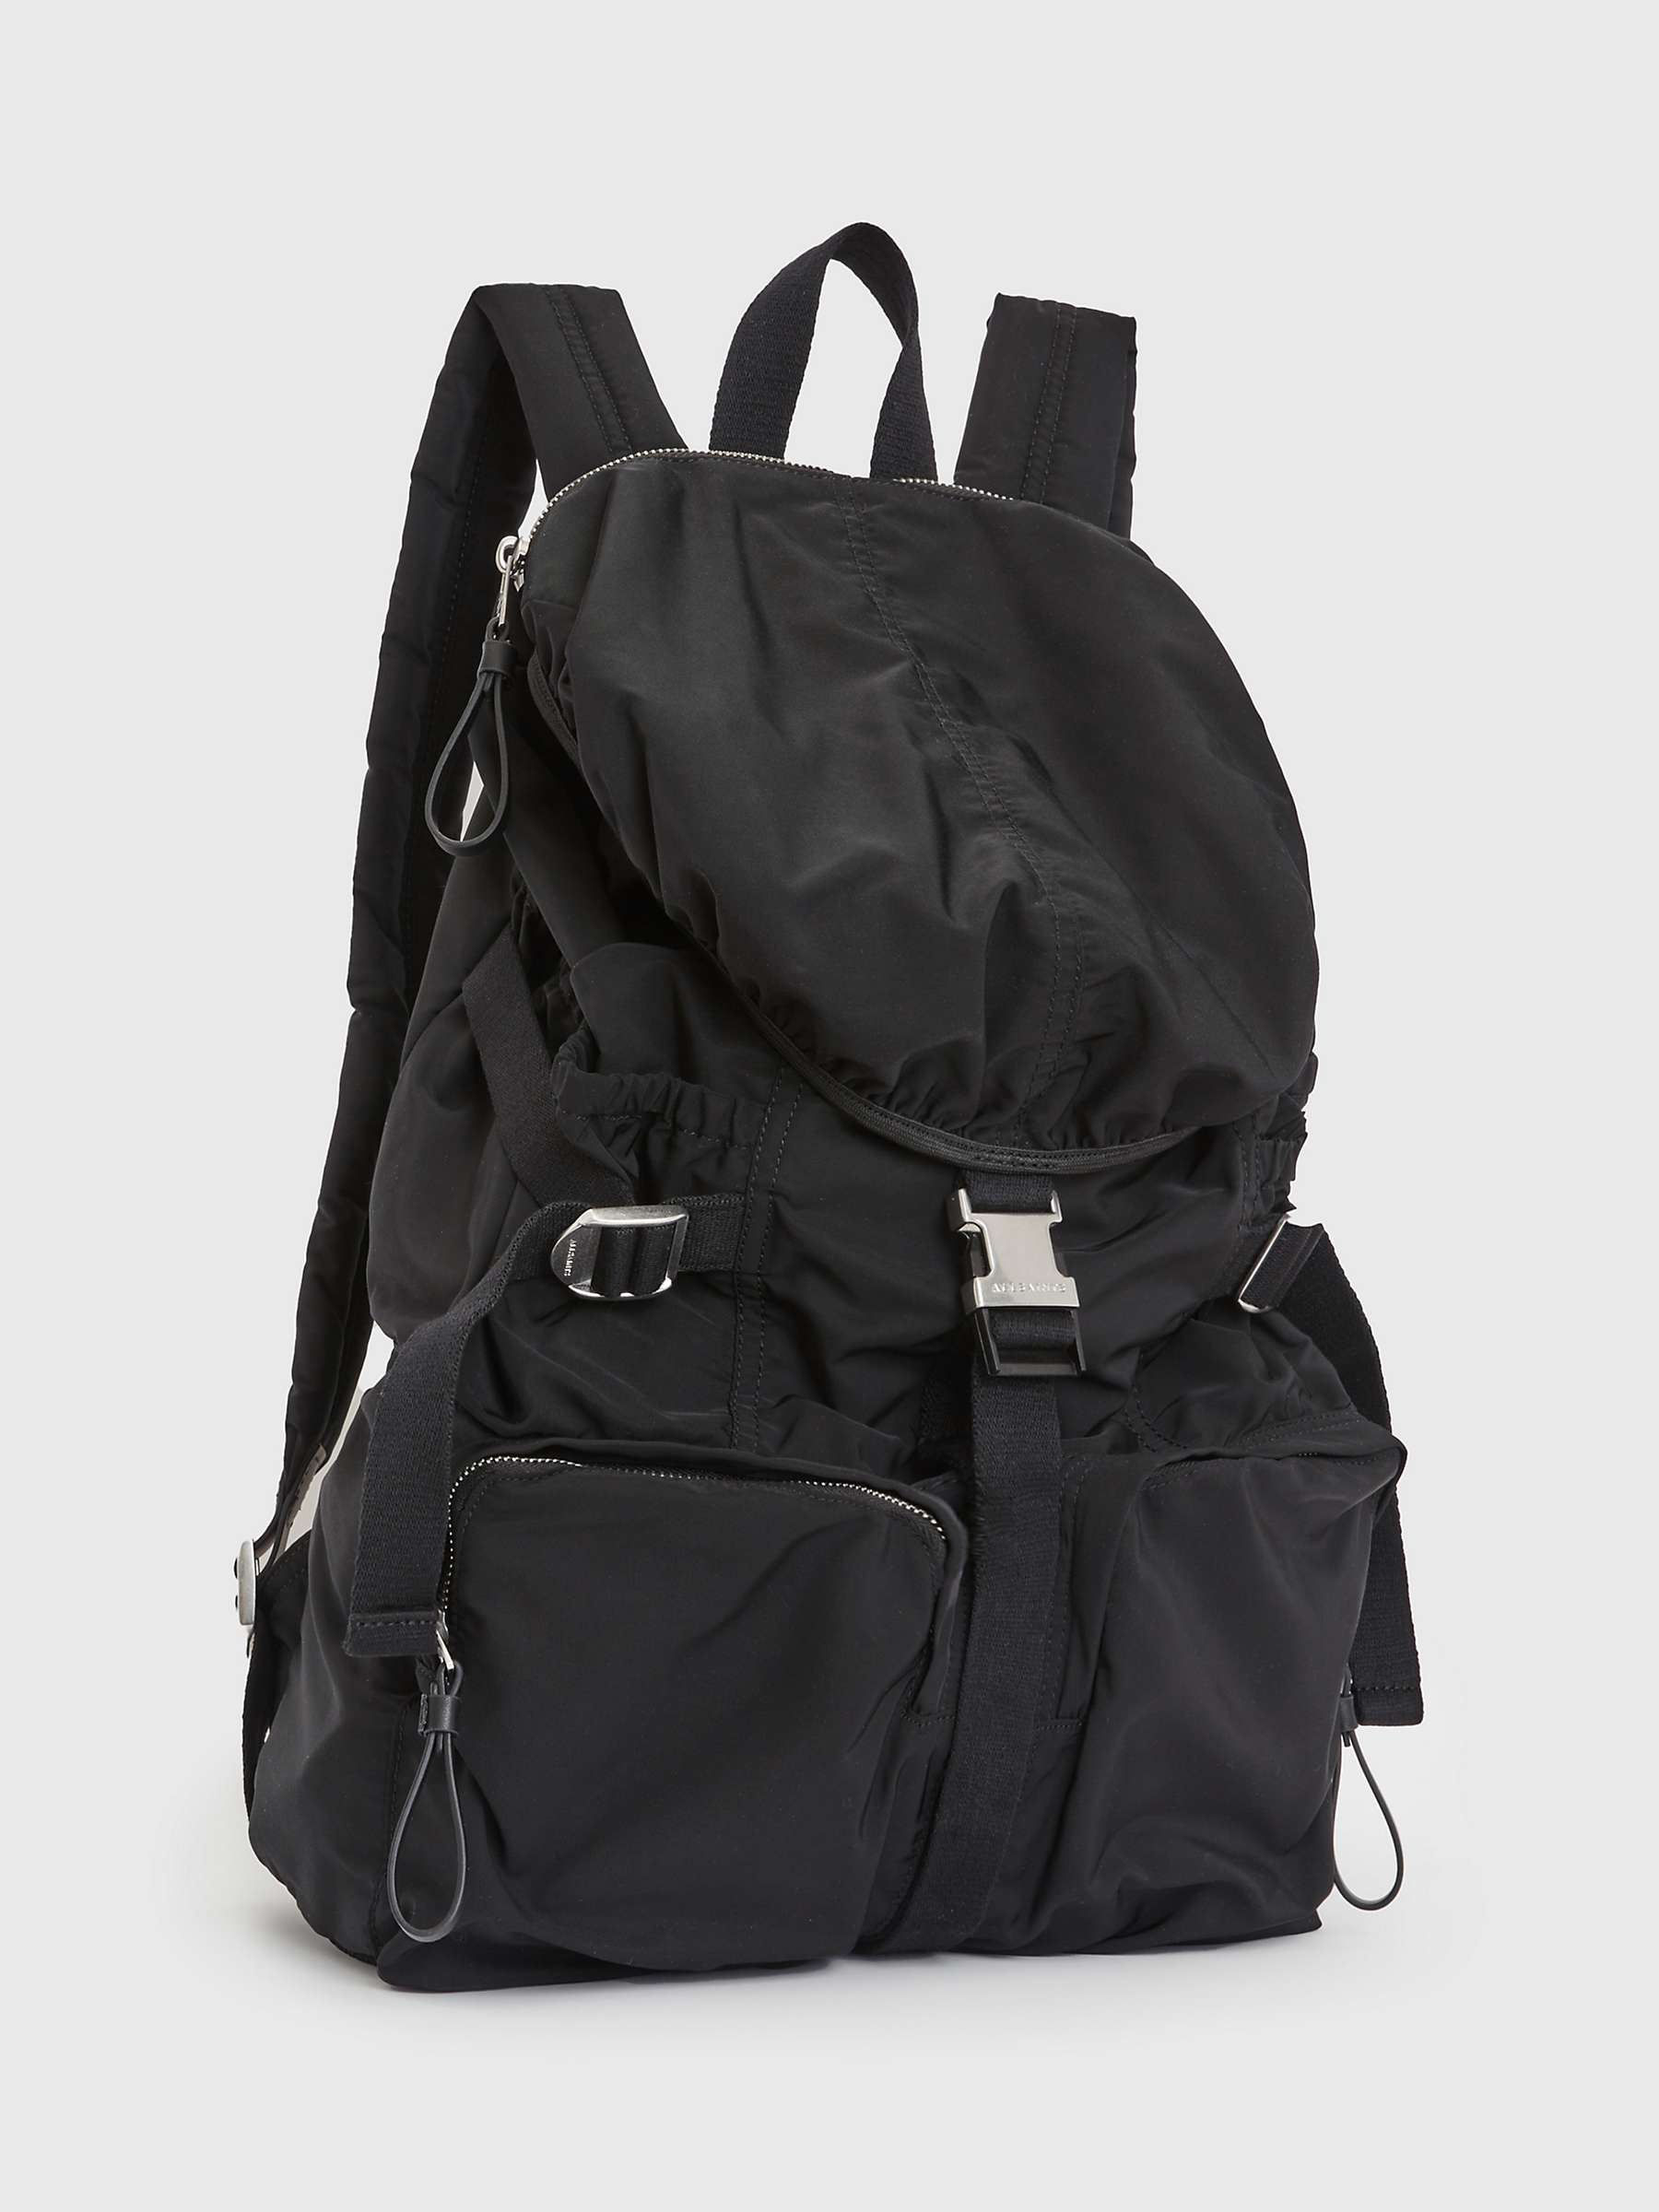 Buy AllSaints Ren Hiking Backpack, Black Online at johnlewis.com